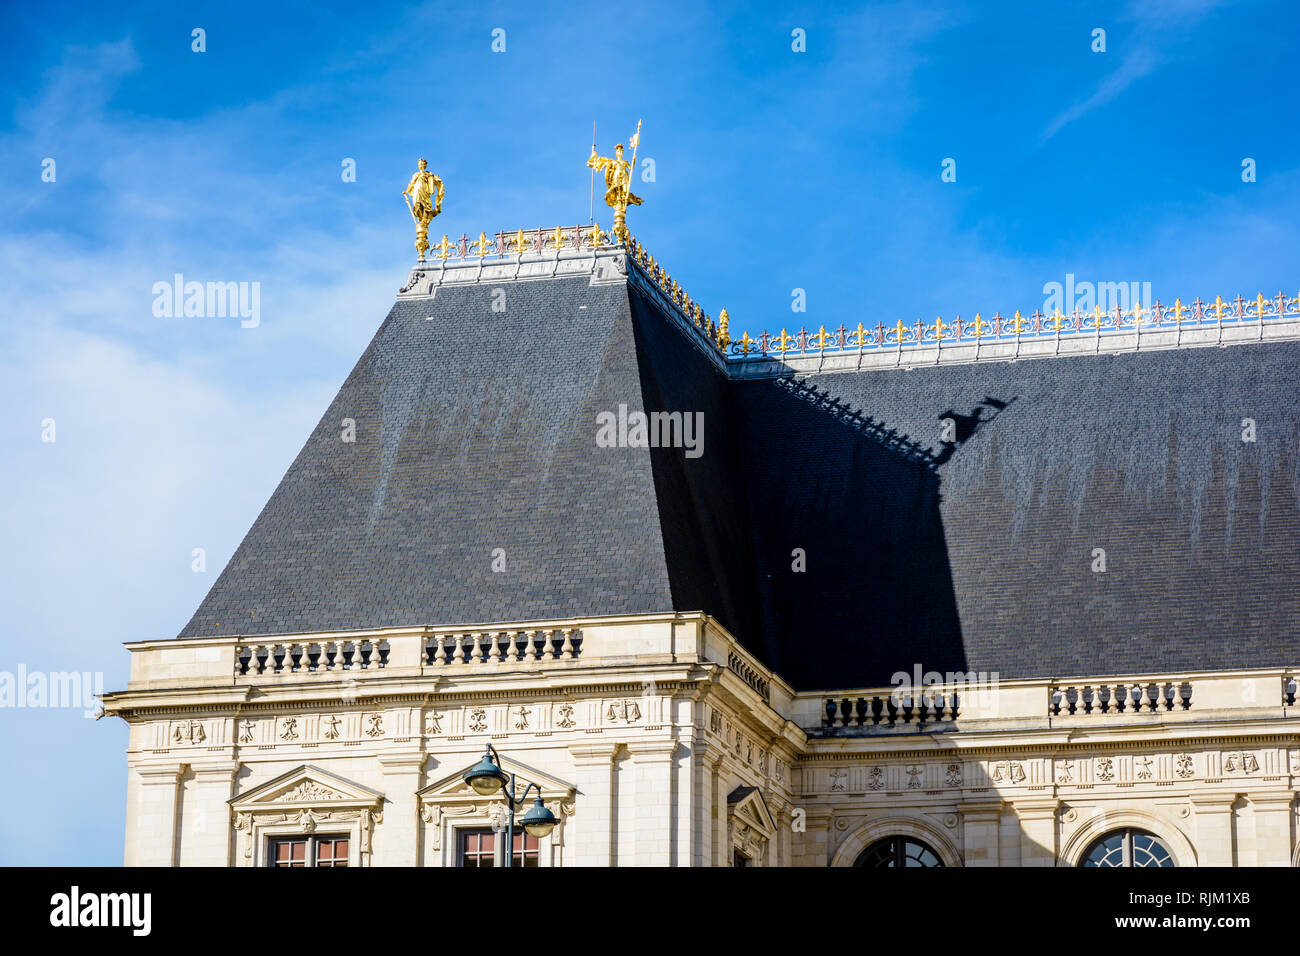 Close-up du toit du palais du Parlement de Bretagne, qui abrite la cour d'appel de Rennes, par une journée ensoleillée sous un ciel bleu profond. Banque D'Images